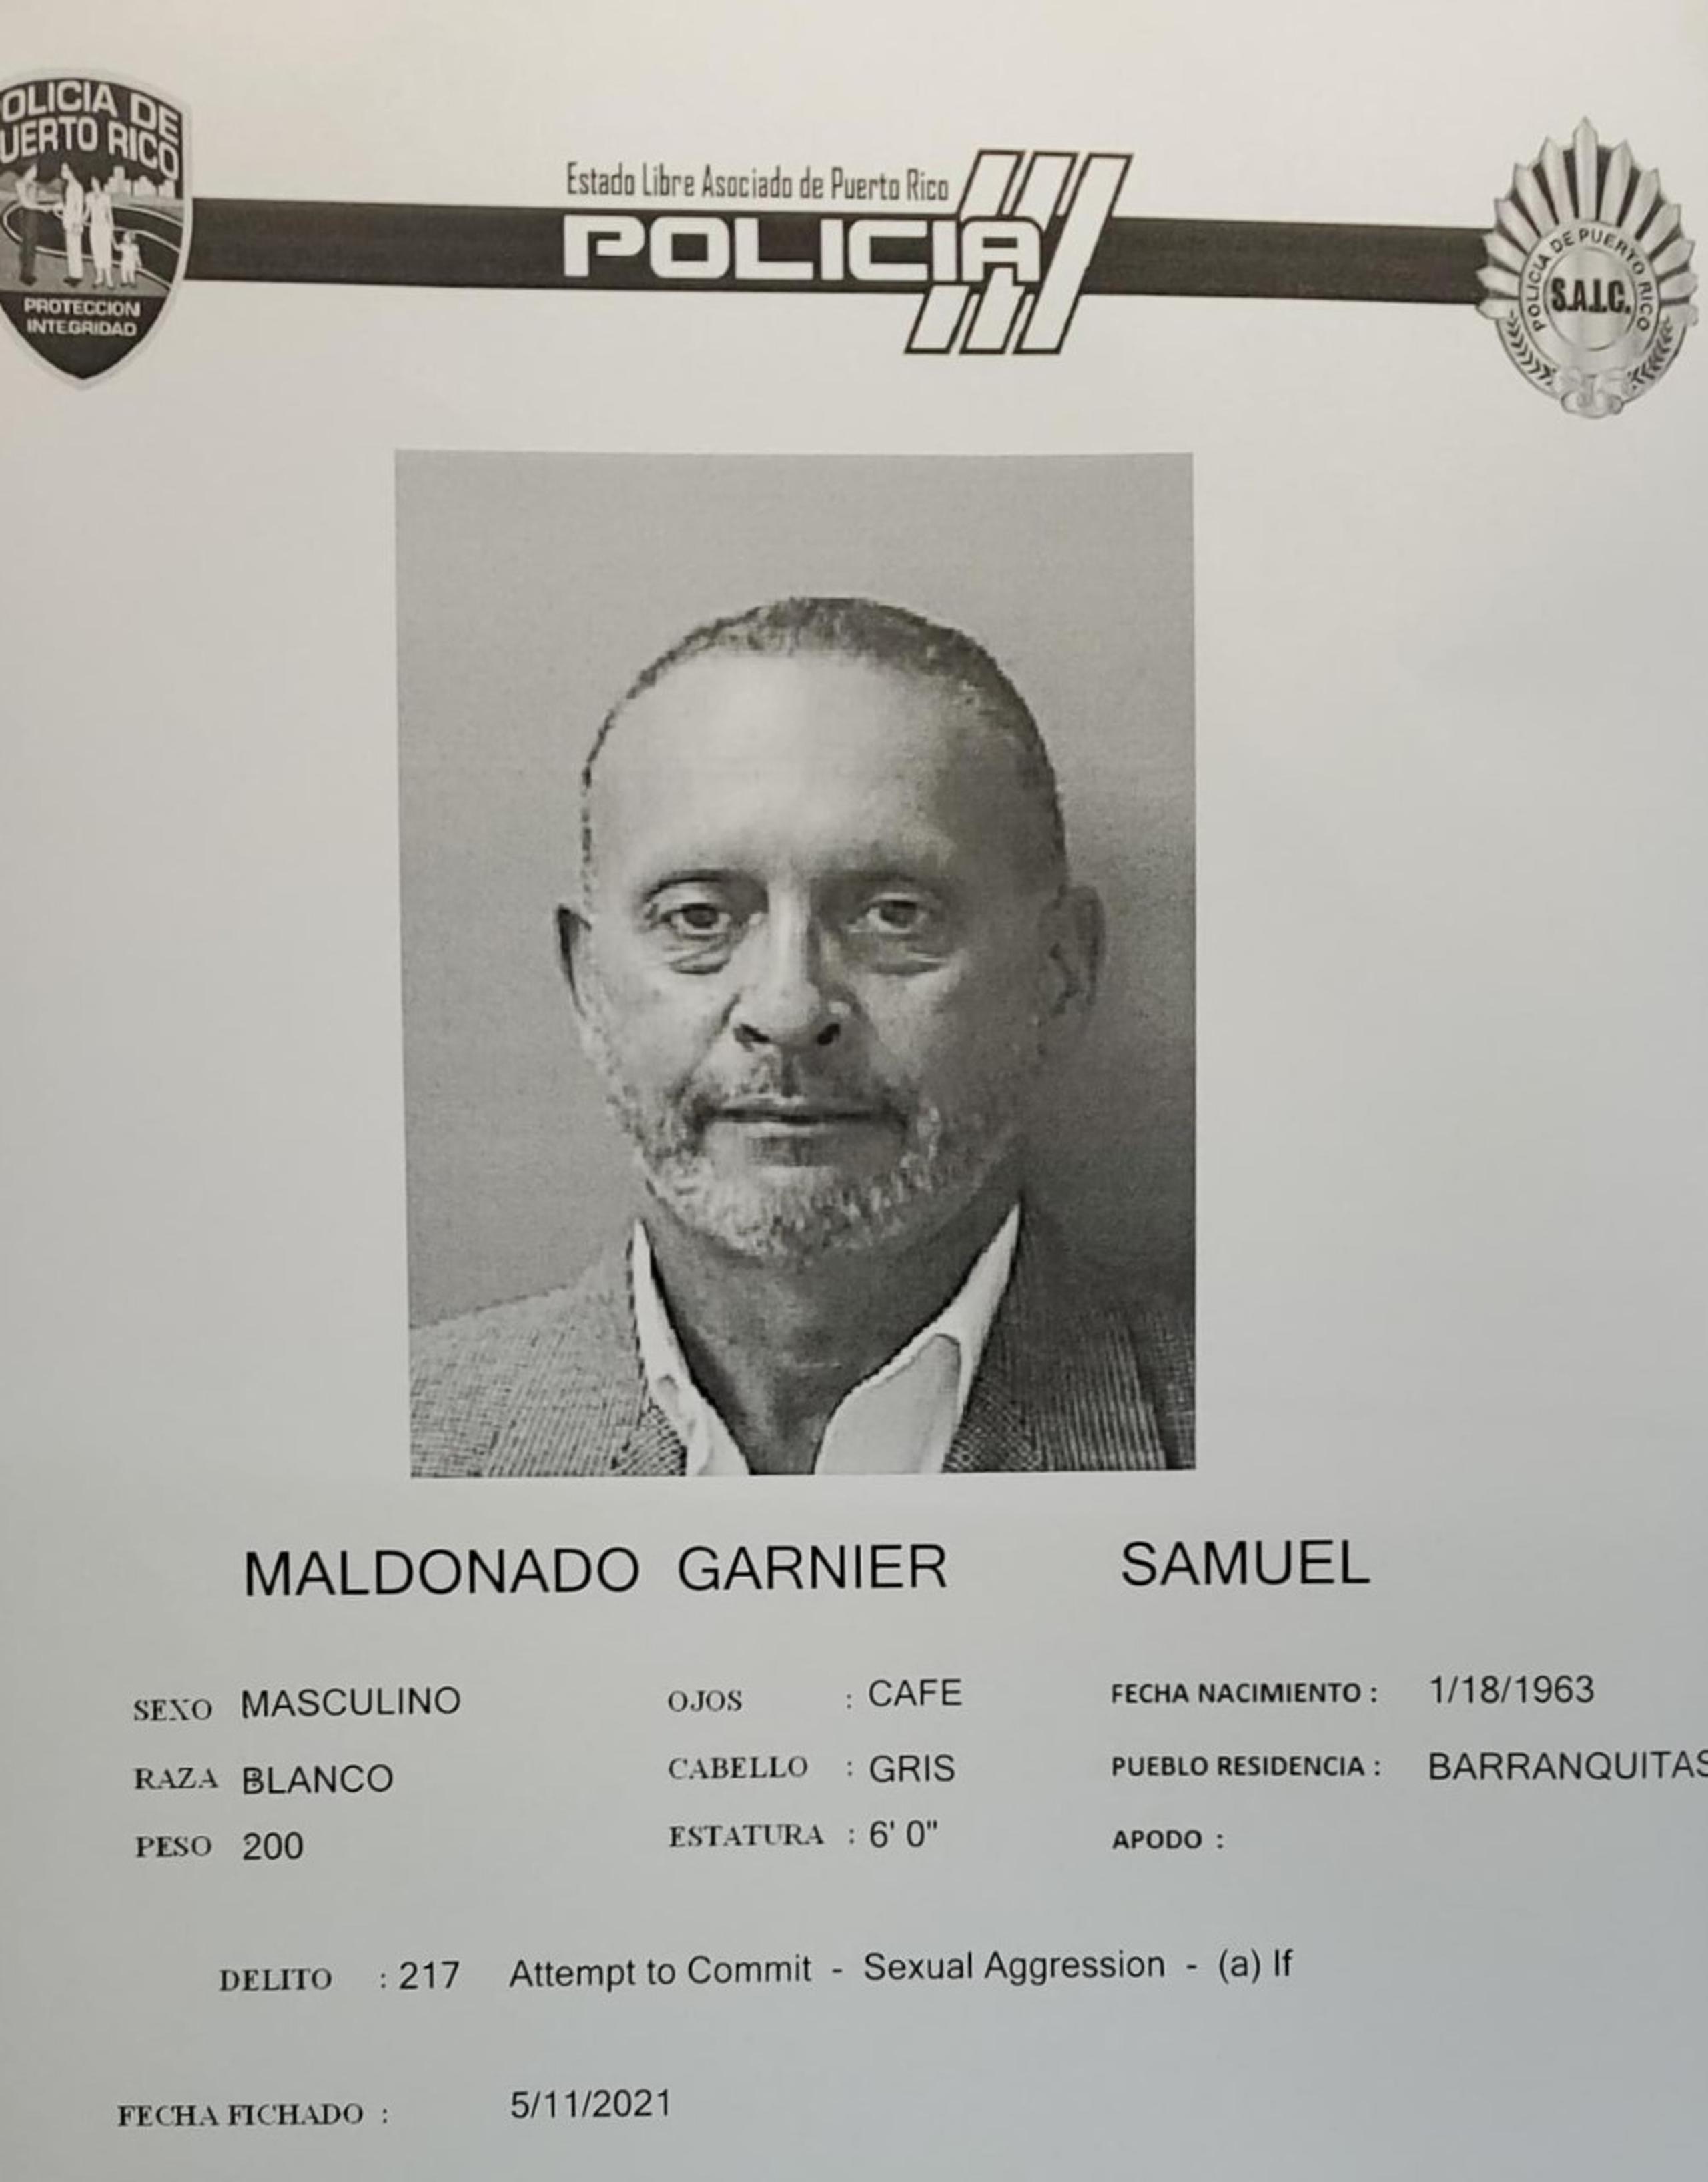 La jueza Jenny M. Malavé Núñez, del Tribunal de Aibonito, determinó causa para arresto contra Samuel Maldonado Garnier, de 58 años, por los delitos de agresión sexual y actos lascivos y se le fijó una fianza de $100,000.